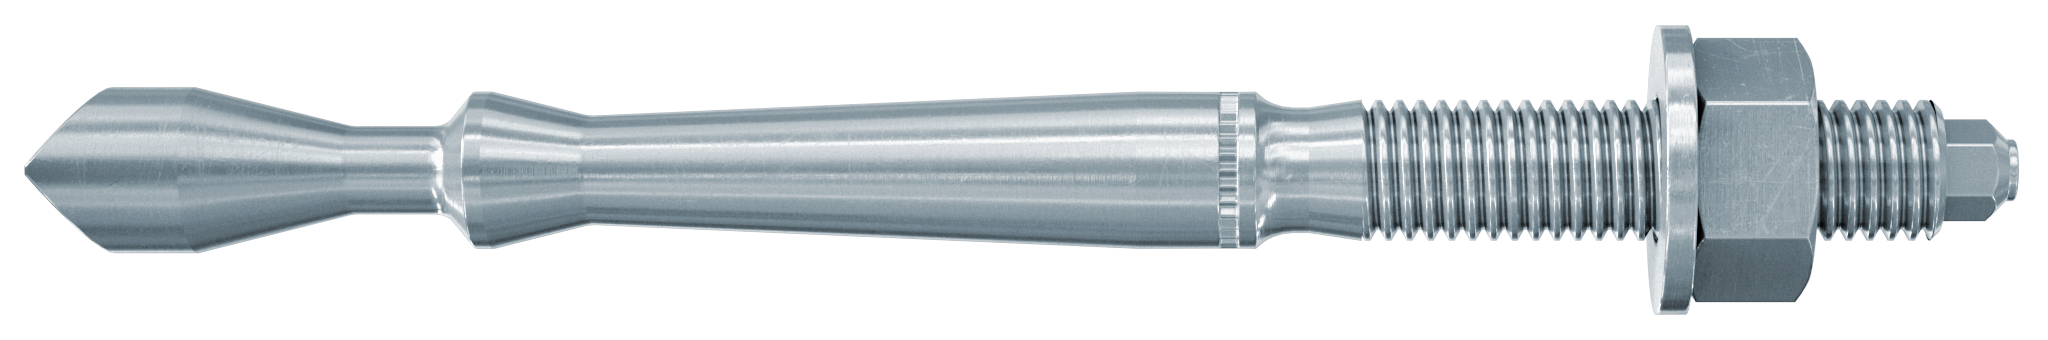 fischer Barra multicono in acciaio FHB II-A L M8x60-10 per ancorante chimico FIS HB (1 Pz.) Barra multicono lunga in acciaio zincato classe 8.8. Massime prestazioni a trazione in calcestruzzo fessurato e a ridotte distanze dai bordi. fie1164